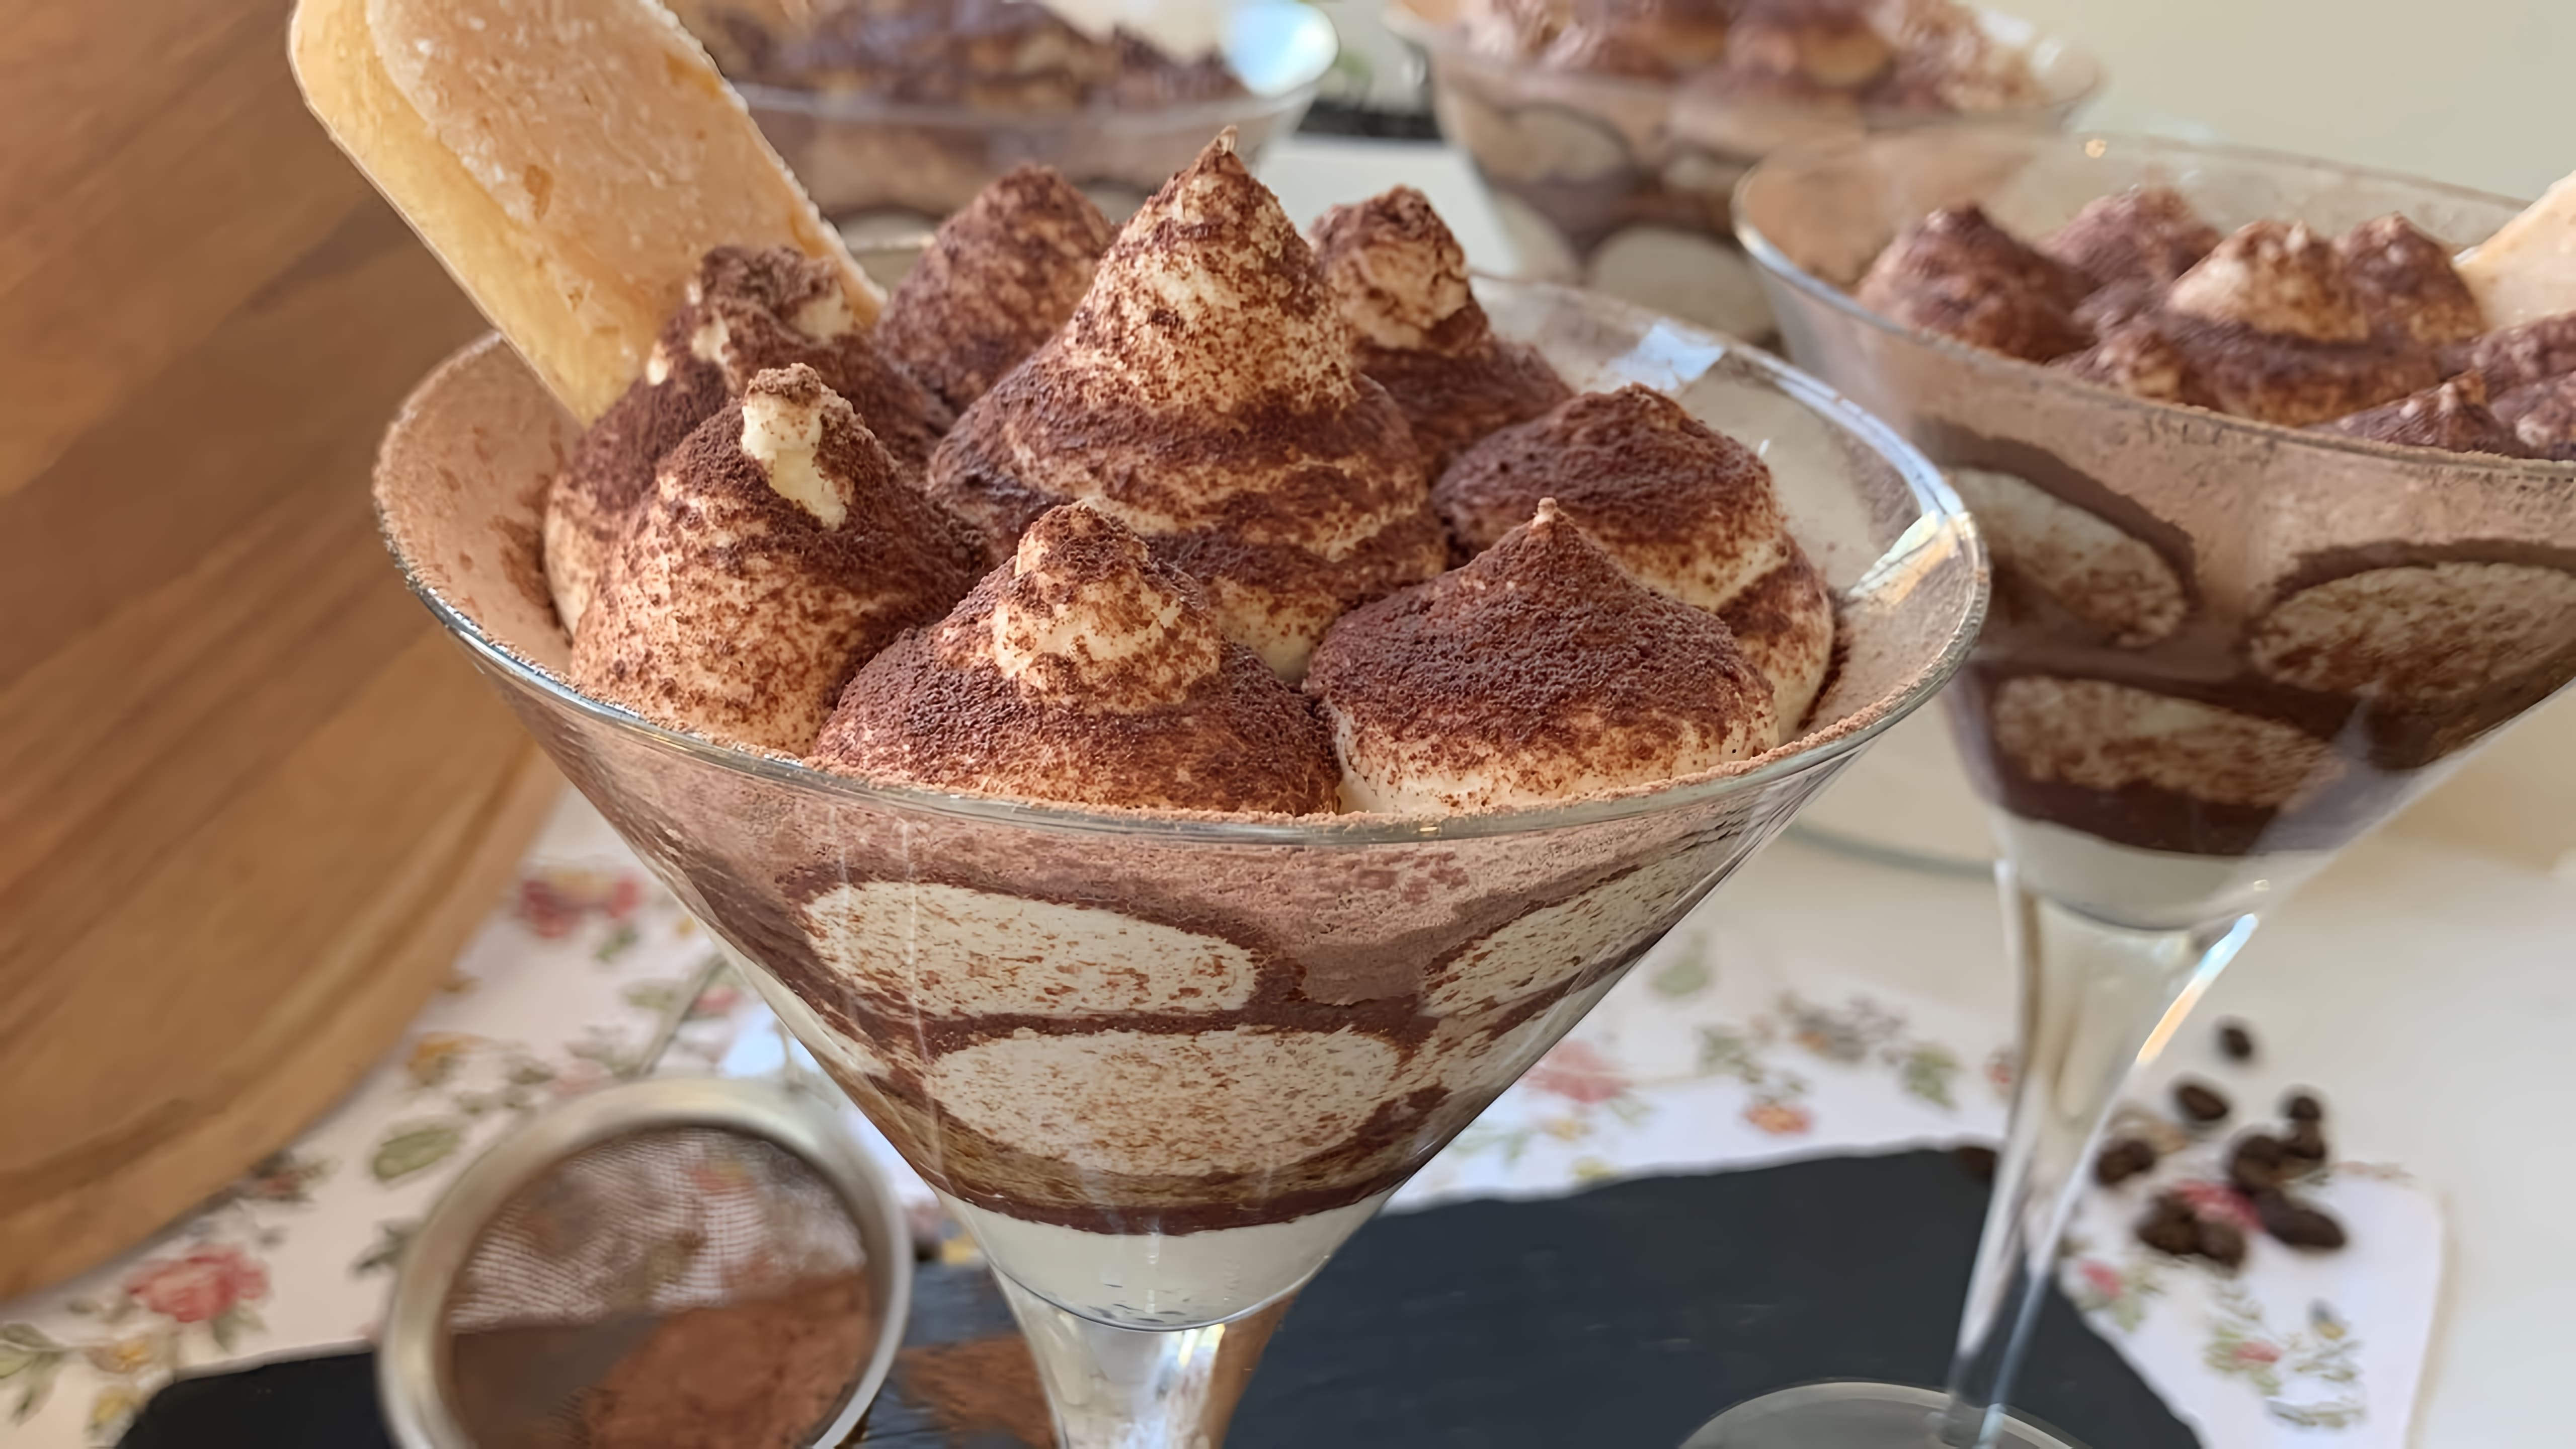 В этом видео демонстрируется рецепт приготовления итальянского десерта Тирамису без яиц